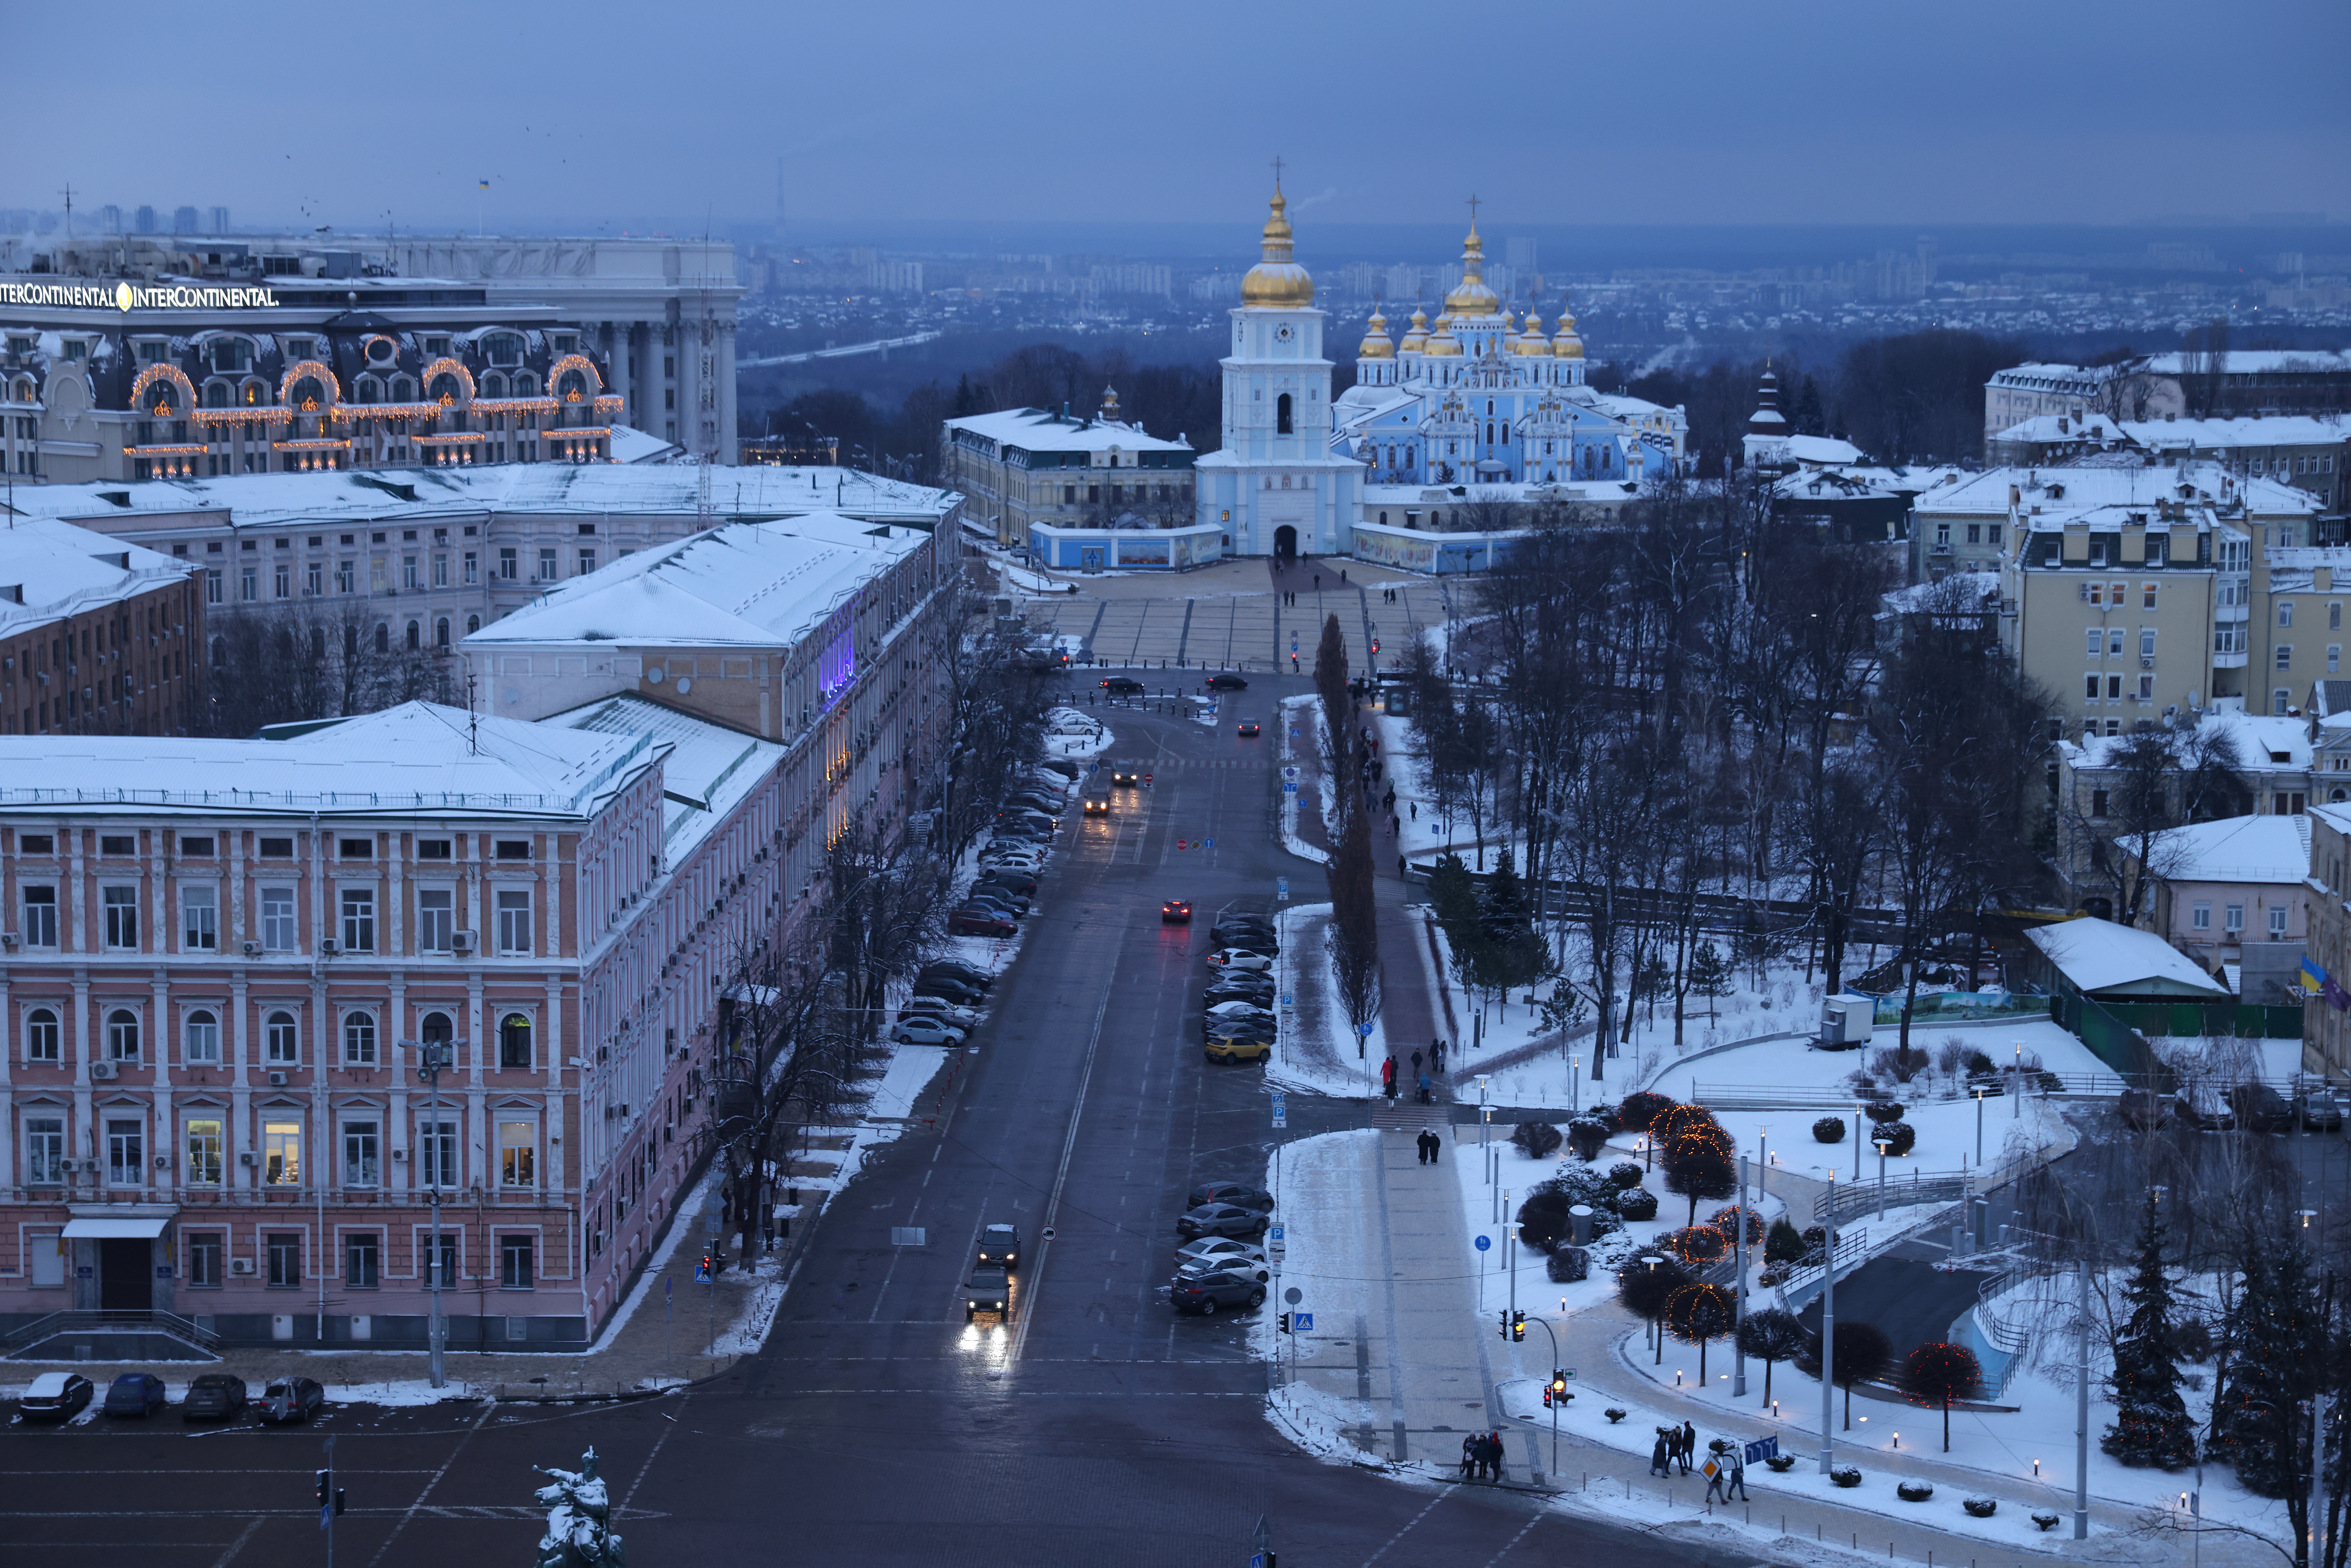 Kyiv, Ukraine, pictured on Jan. 23, 2022